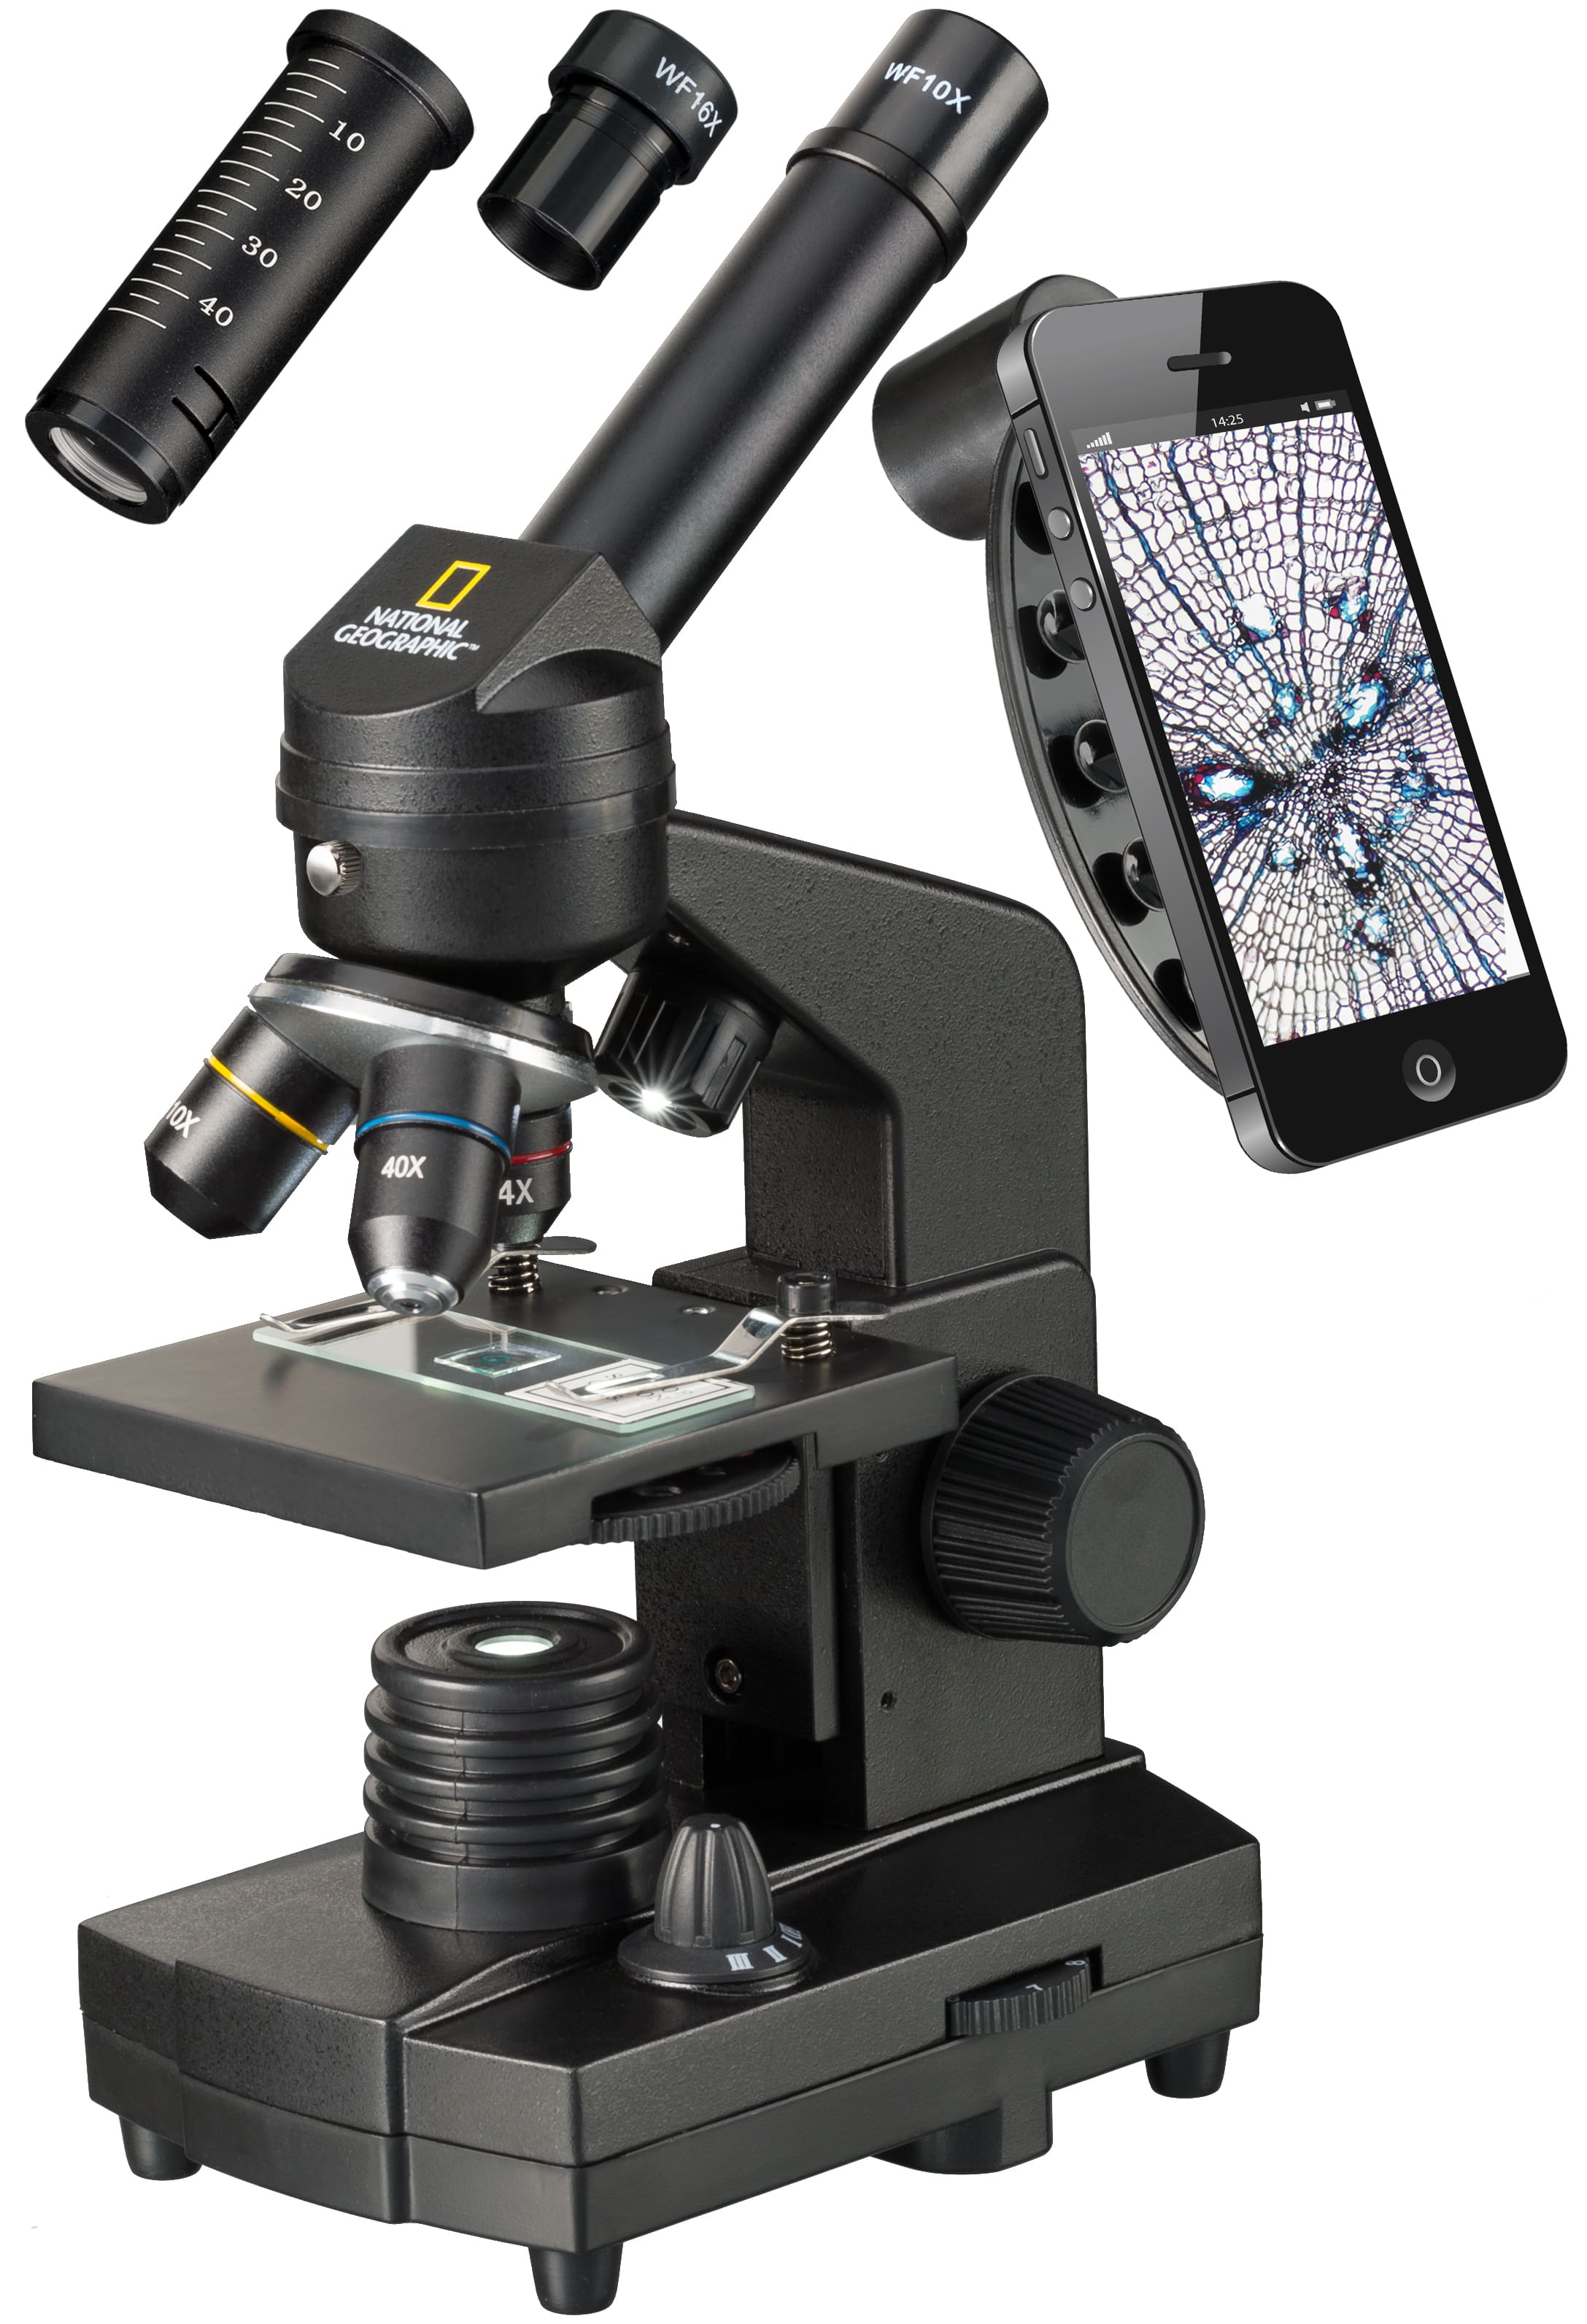   Microscopio per principianti di tutte le età, ideale per la scuola e per hobby  